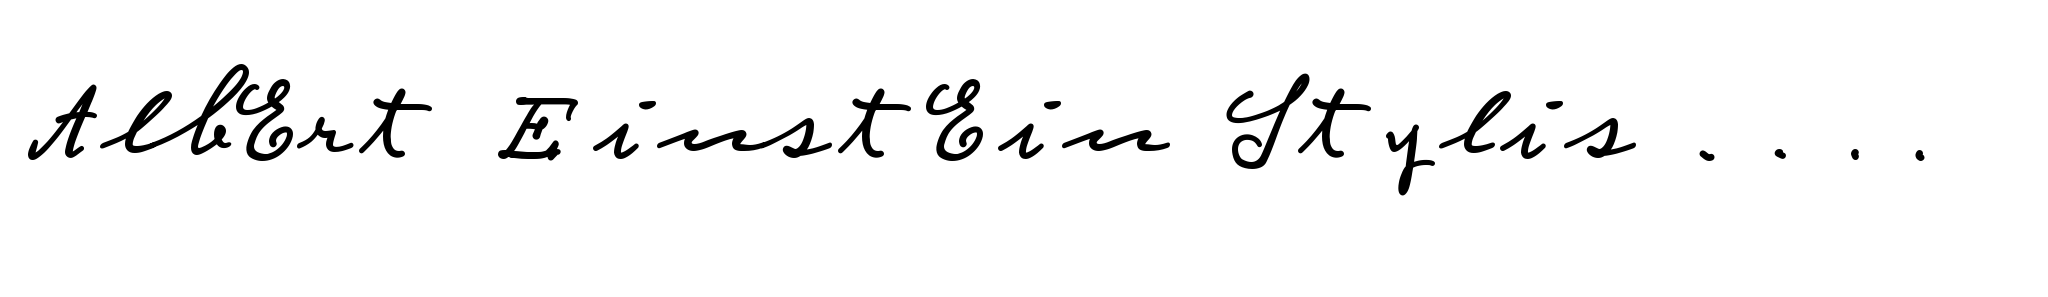 Albert Einstein Stylistic Set-Math 60 Semi Bold image